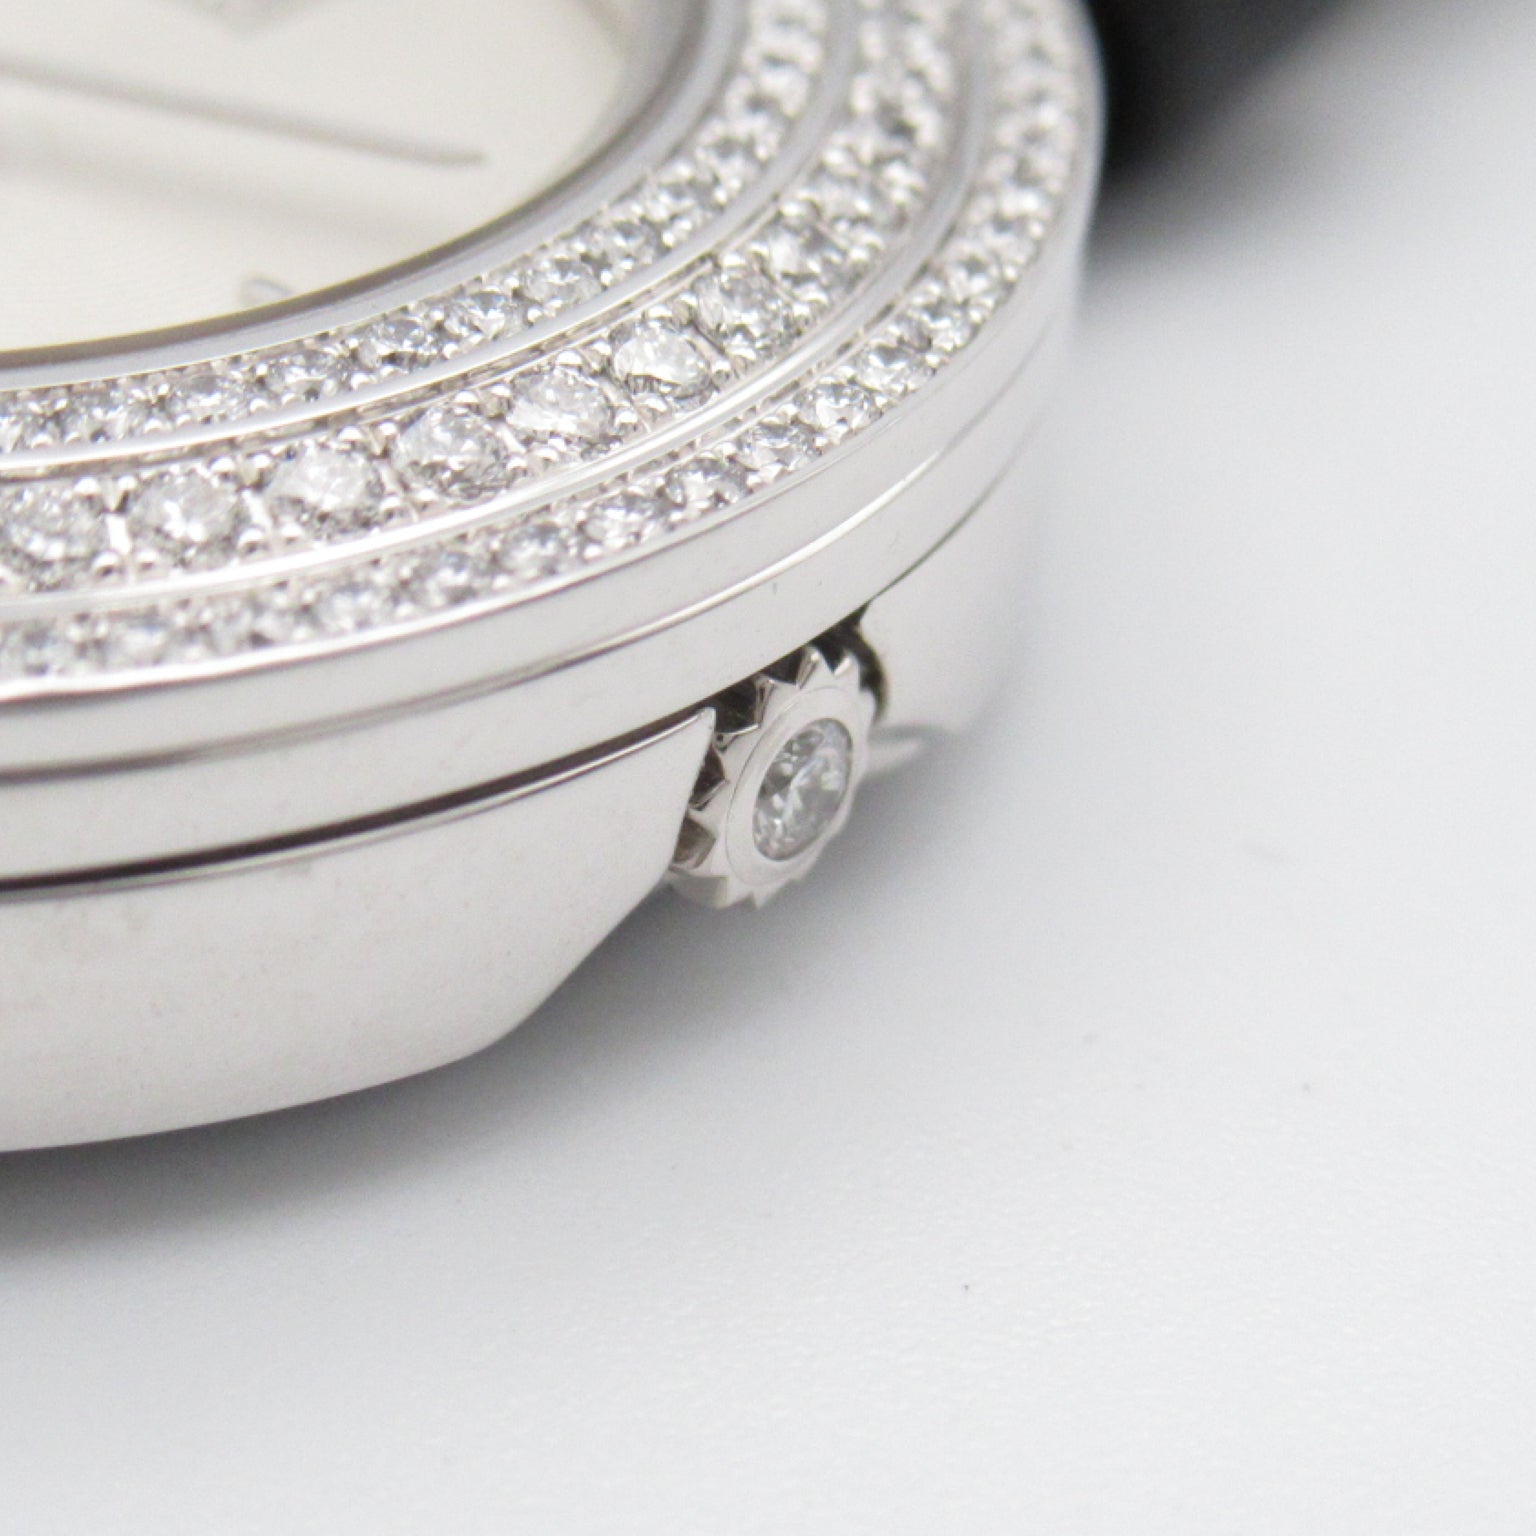 Van Cleef & Arpels Van Cleef & Arpels Charm Mini Watch Watch K18WG (White G) Leather Belt  Silver  VCARO29900